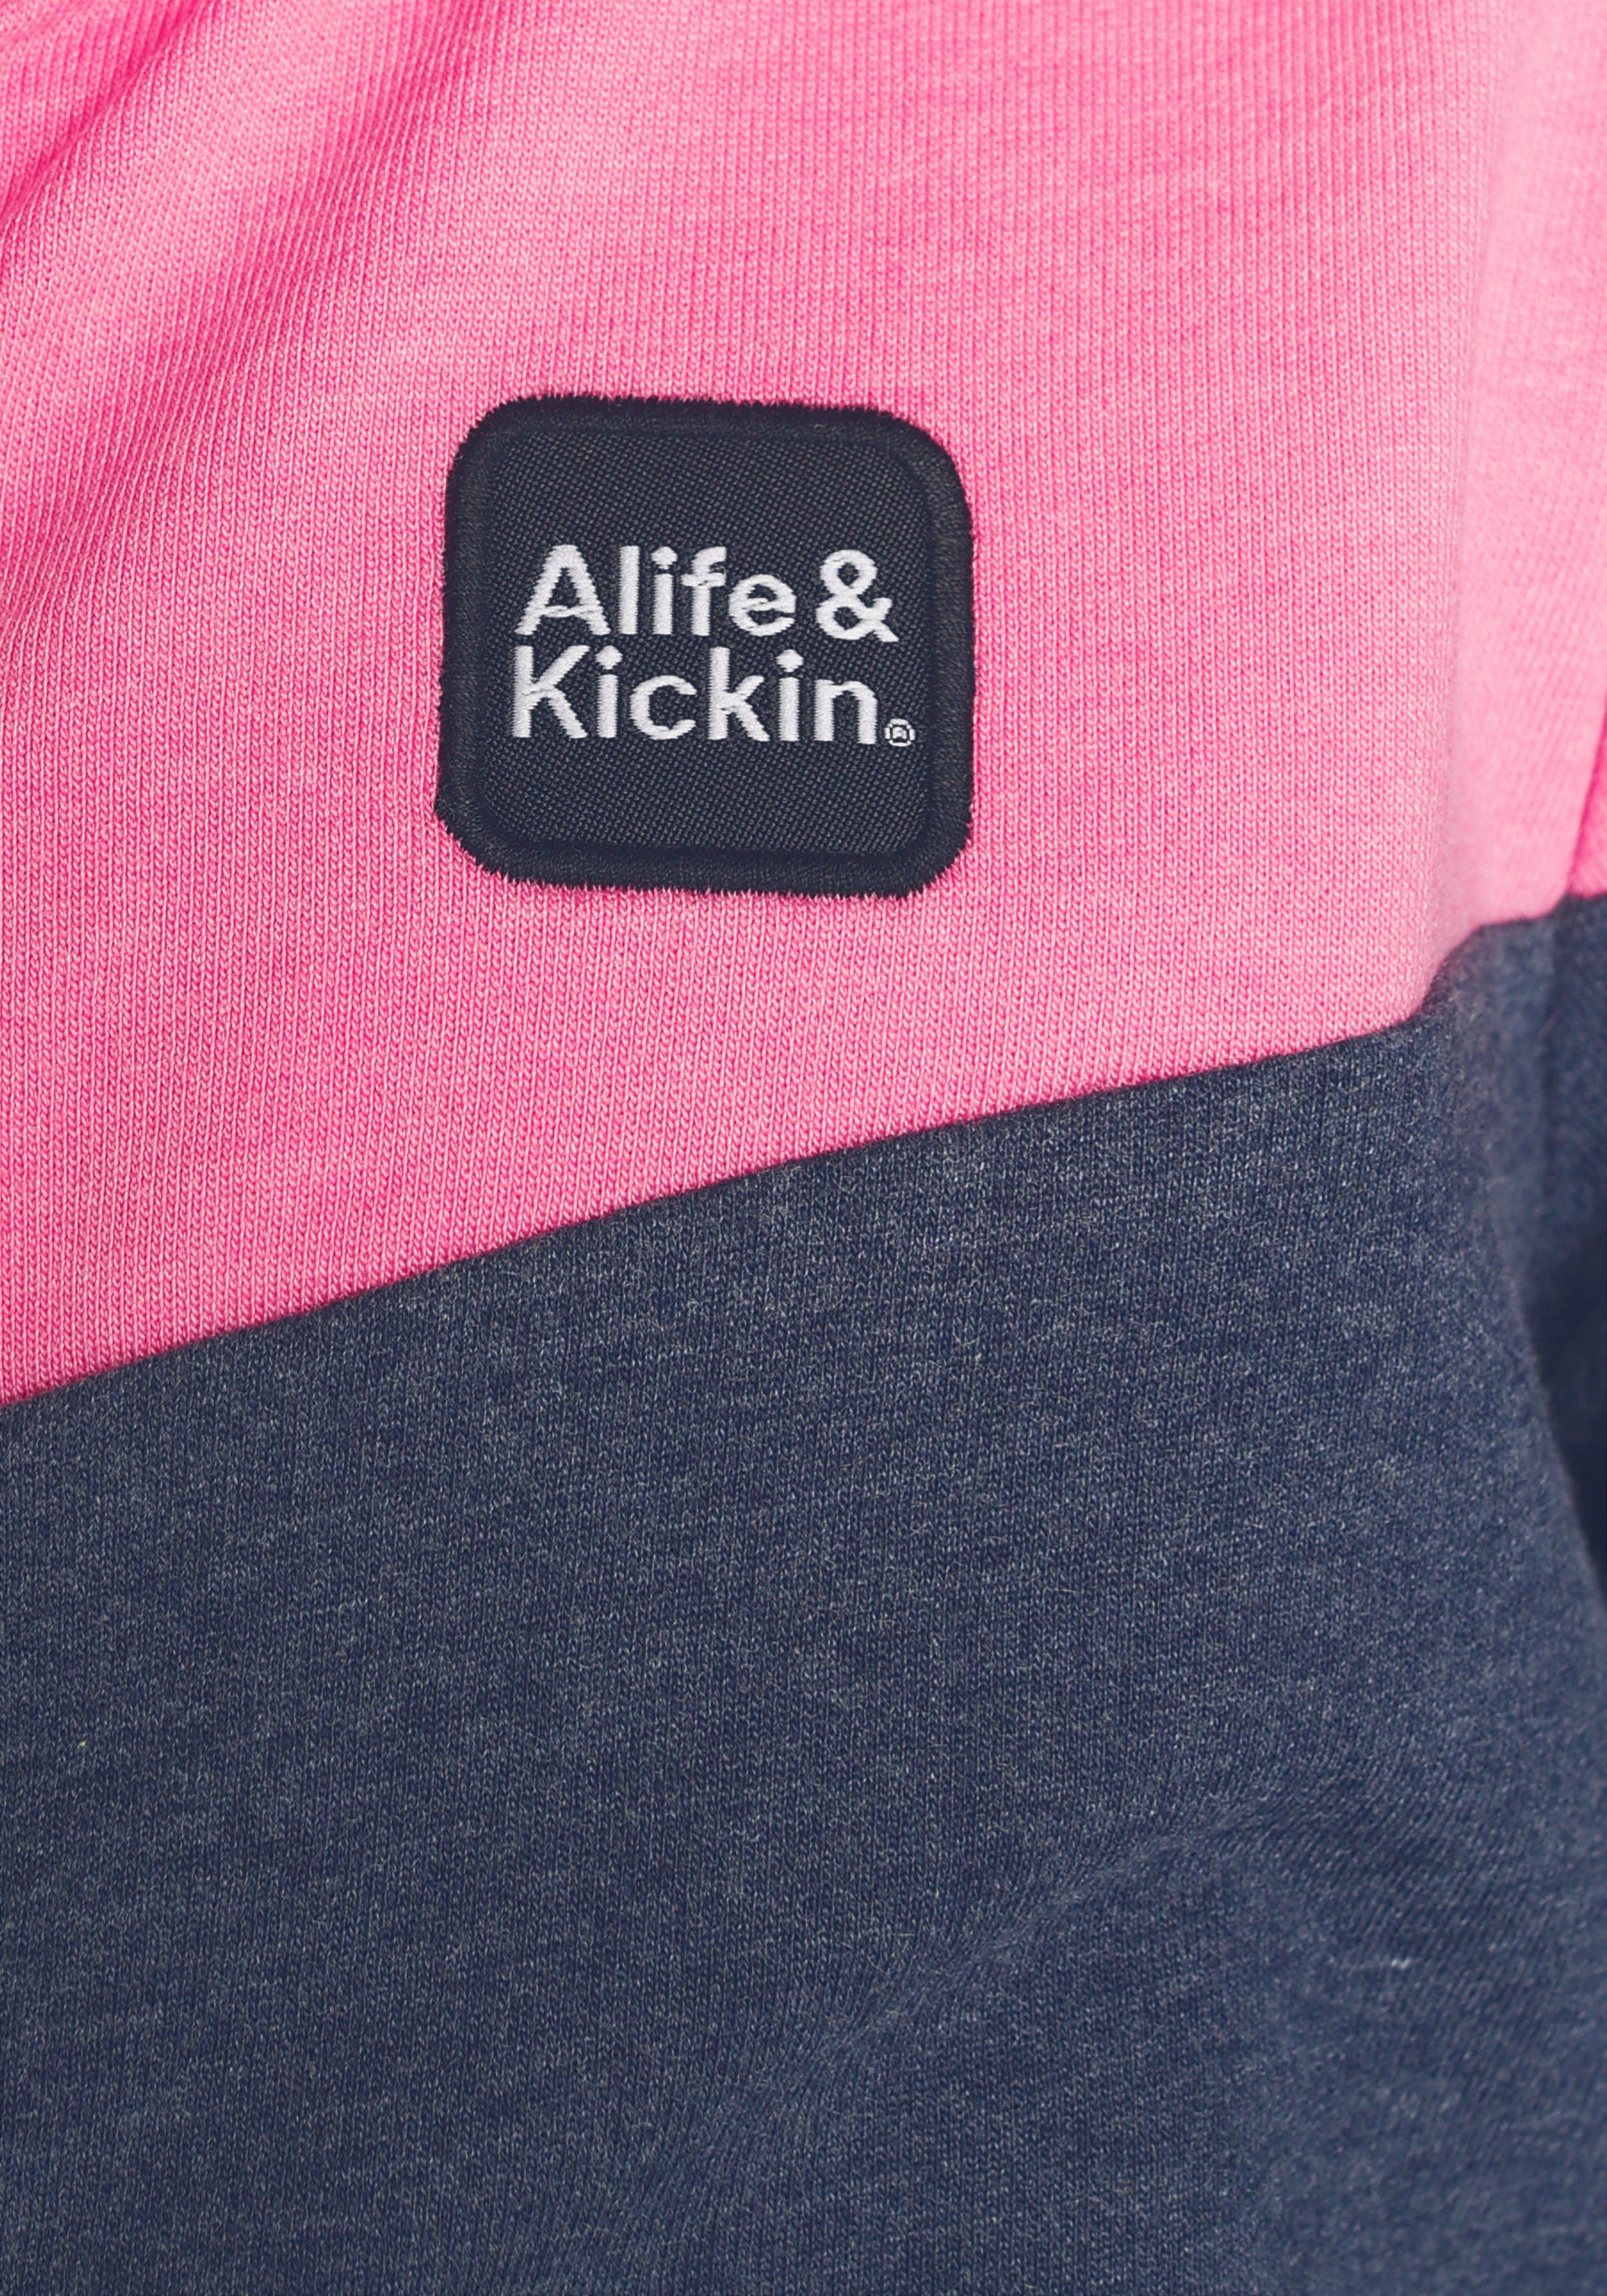 Kids. & Sweatjacke Kickin & Kickin für NEUE Colourblocking Alife Alife coolem MARKE! mit